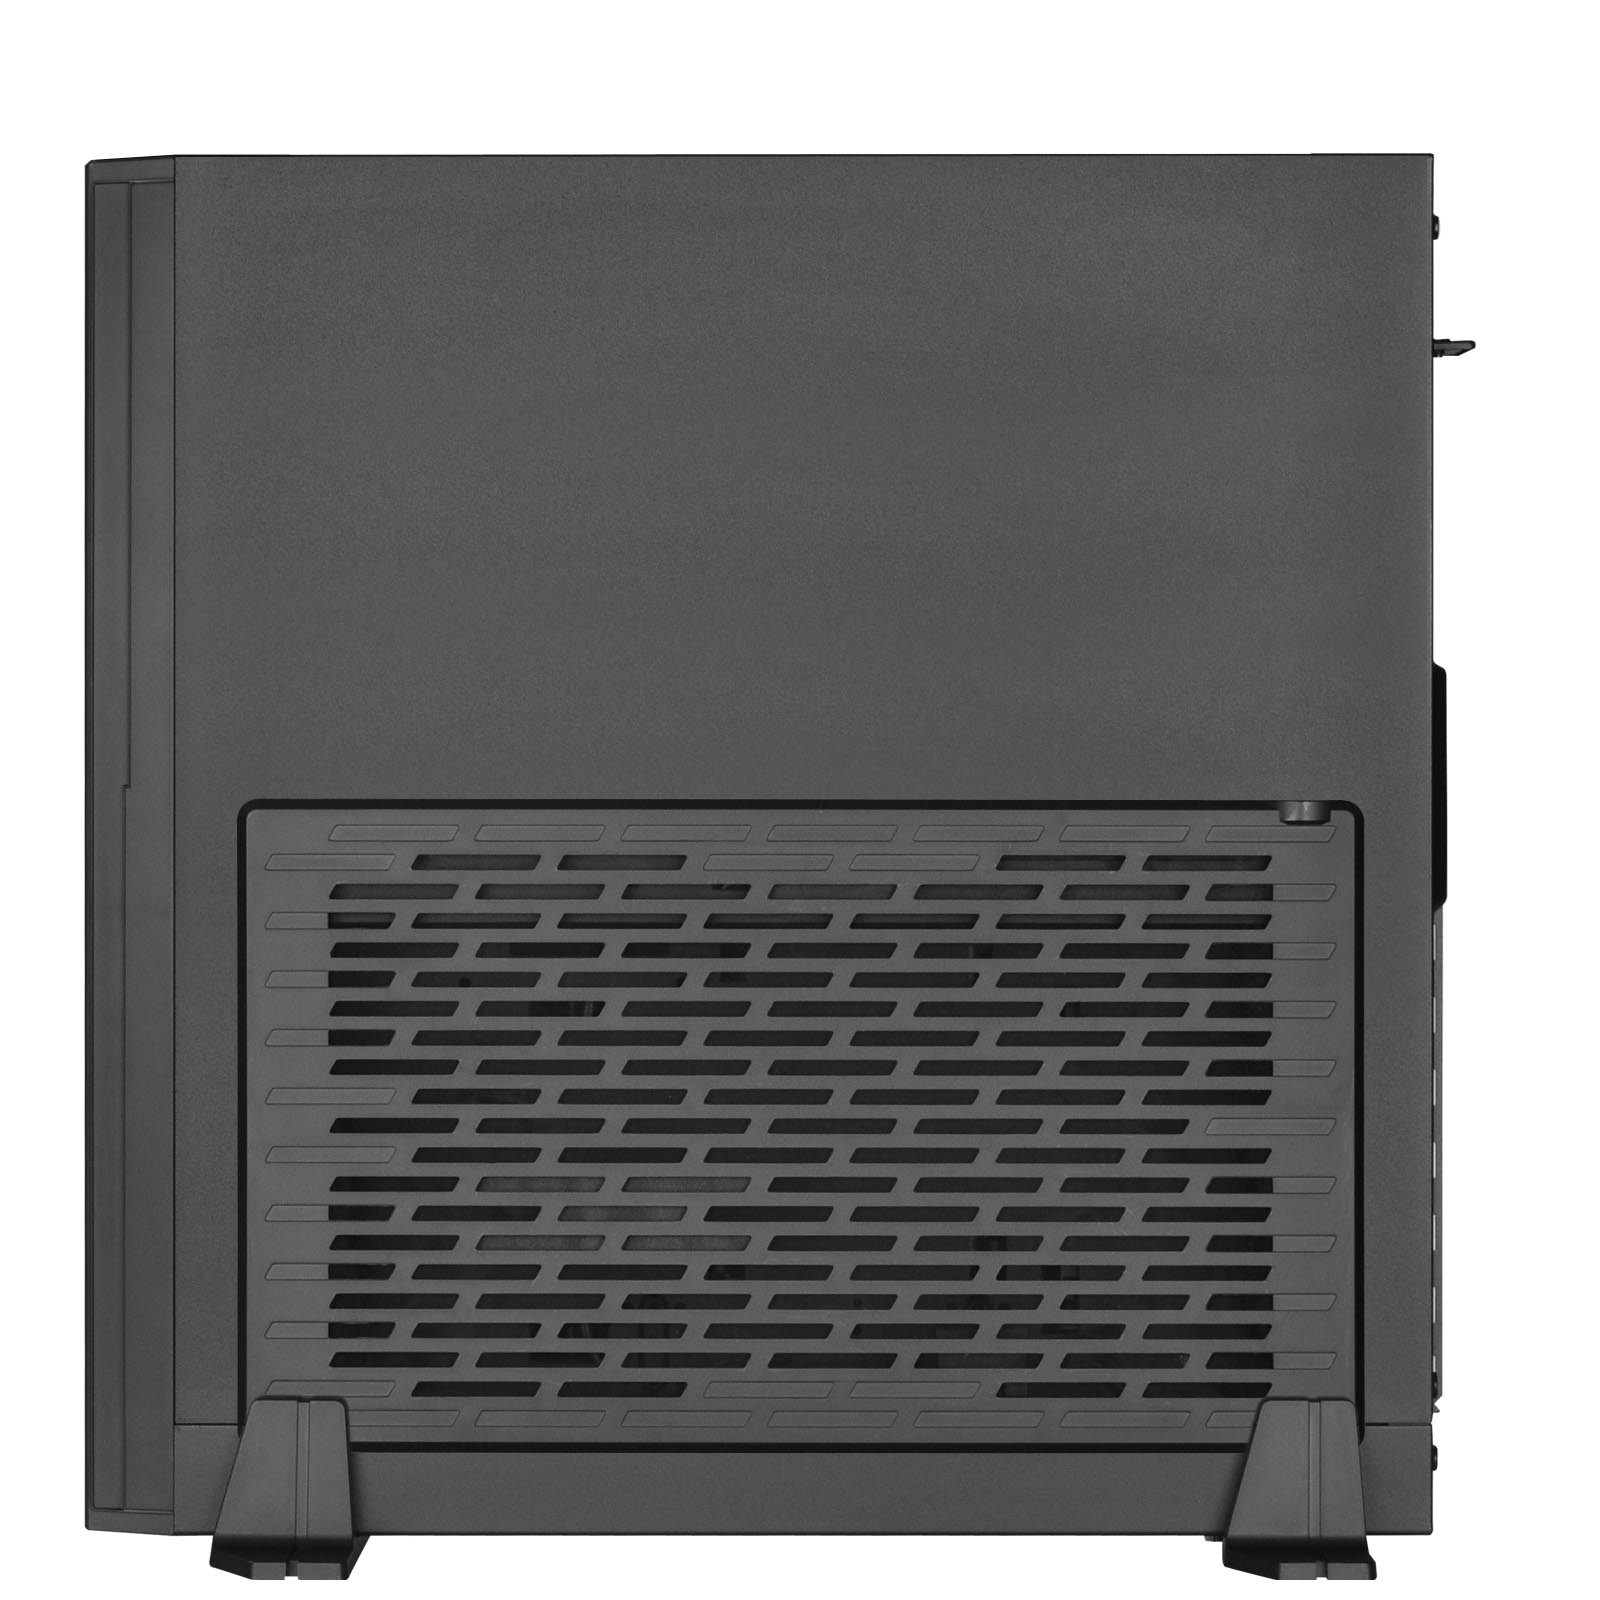 Silverstone - Silverstone Milo ML08 Mini-ITX Case - Black (SST-ML08B)